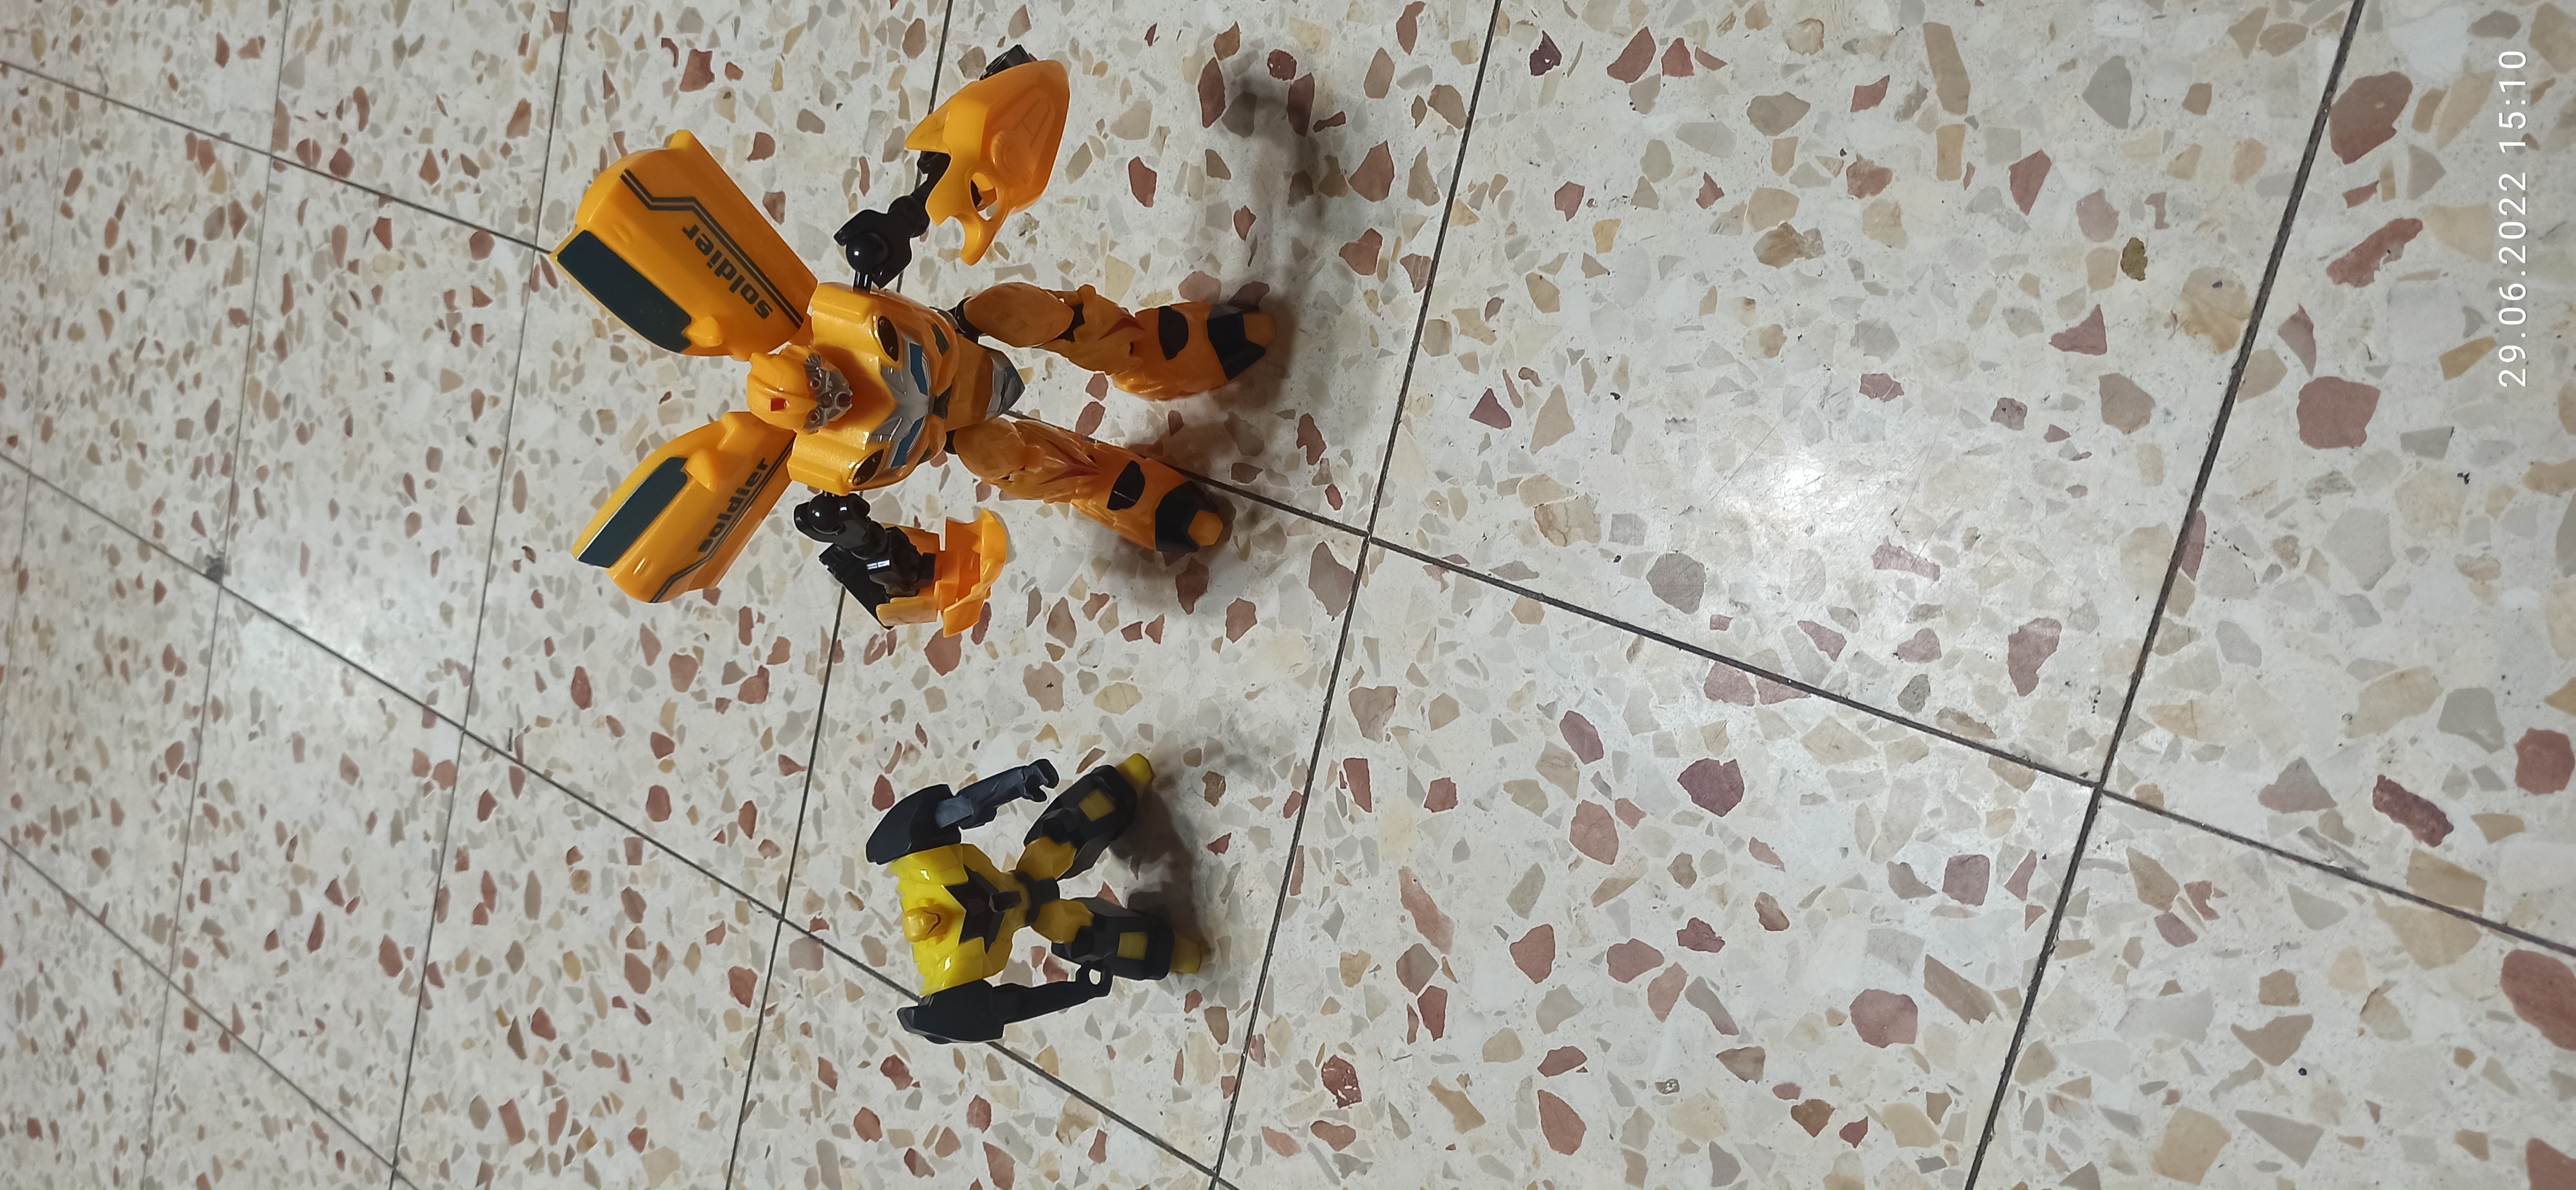 תמונה 2 ,2 רובוטריקים ומכונית של סופרהי למכירה ביבנה לתינוק ולילד  משחקים וצעצועים